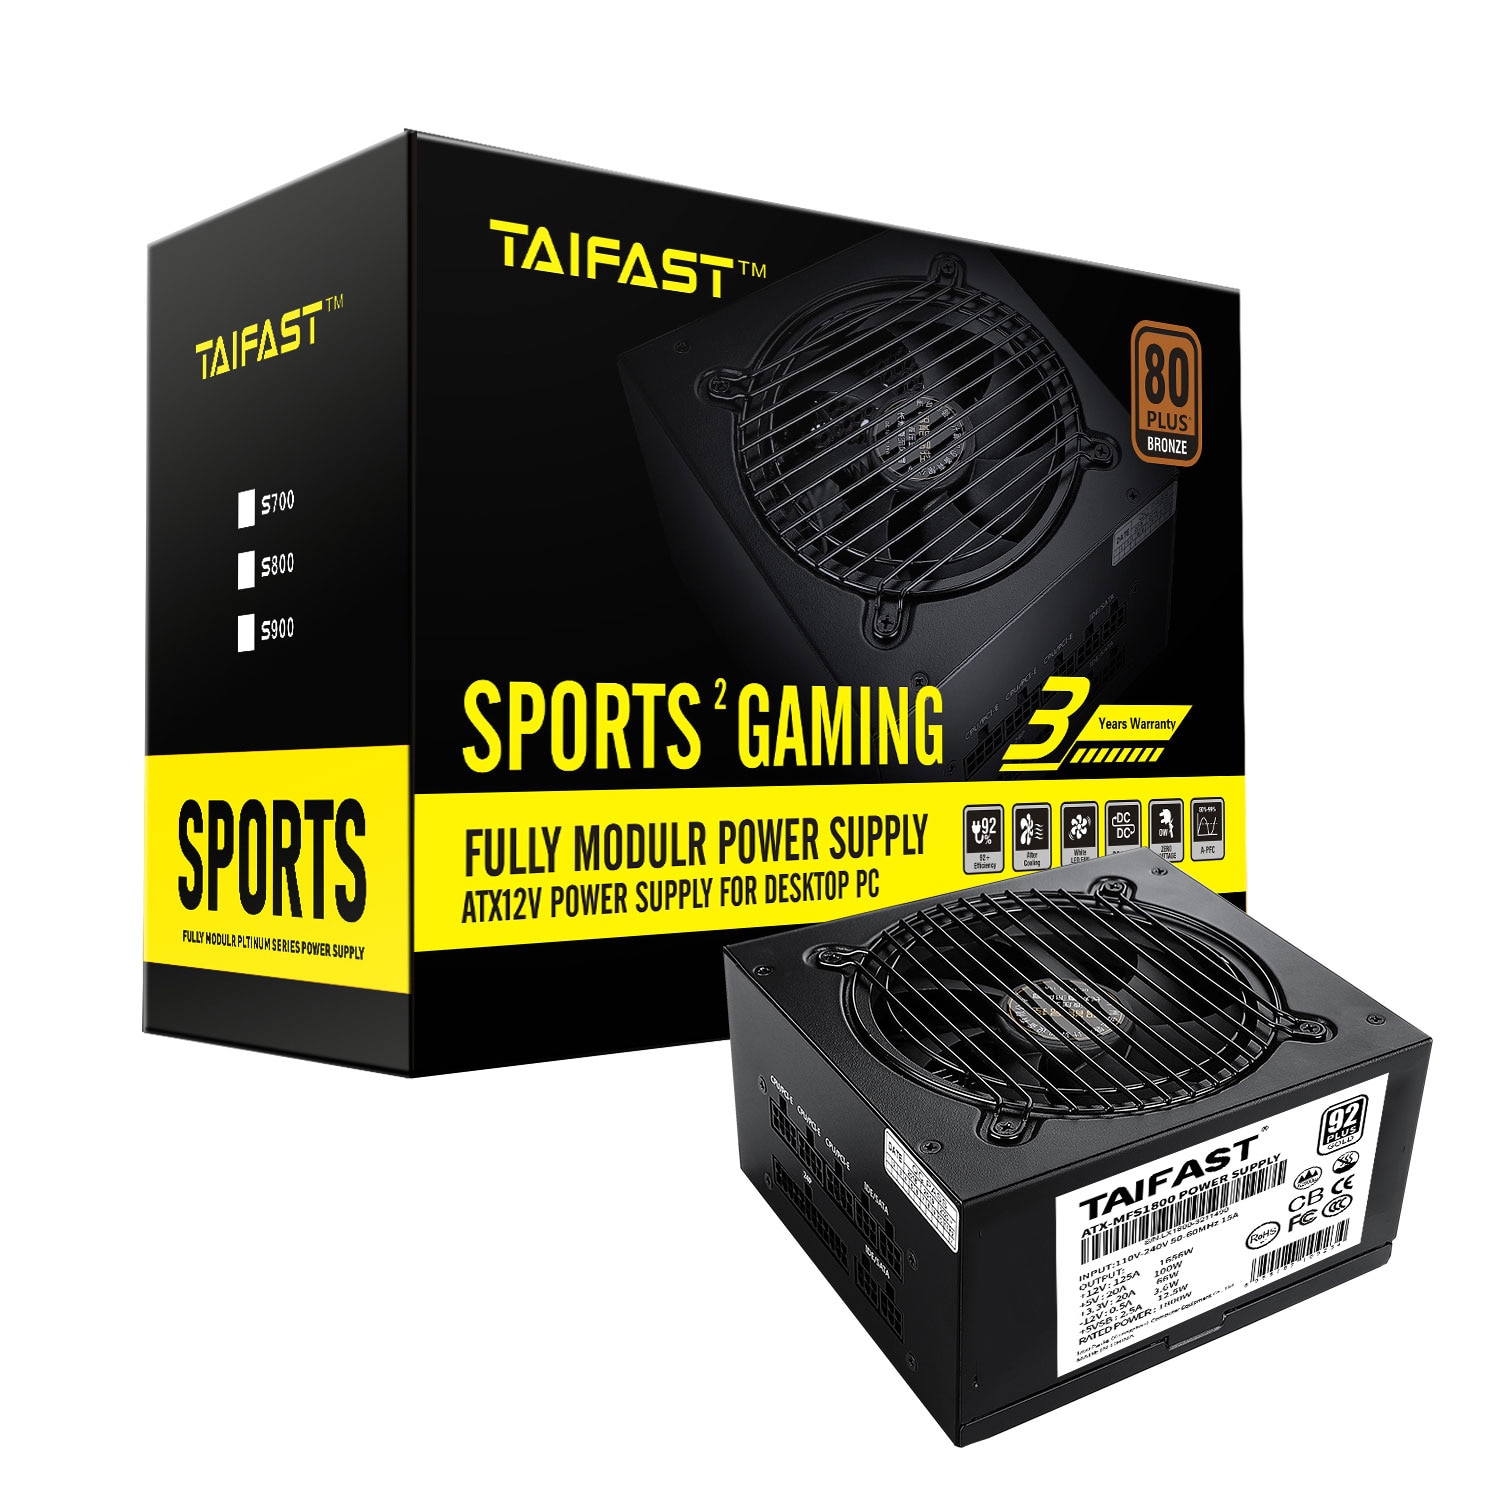 Taifast-ATX 전체 모듈형 PC 전원 공급 장치, 1800 와트 ETH 마이너 PSU